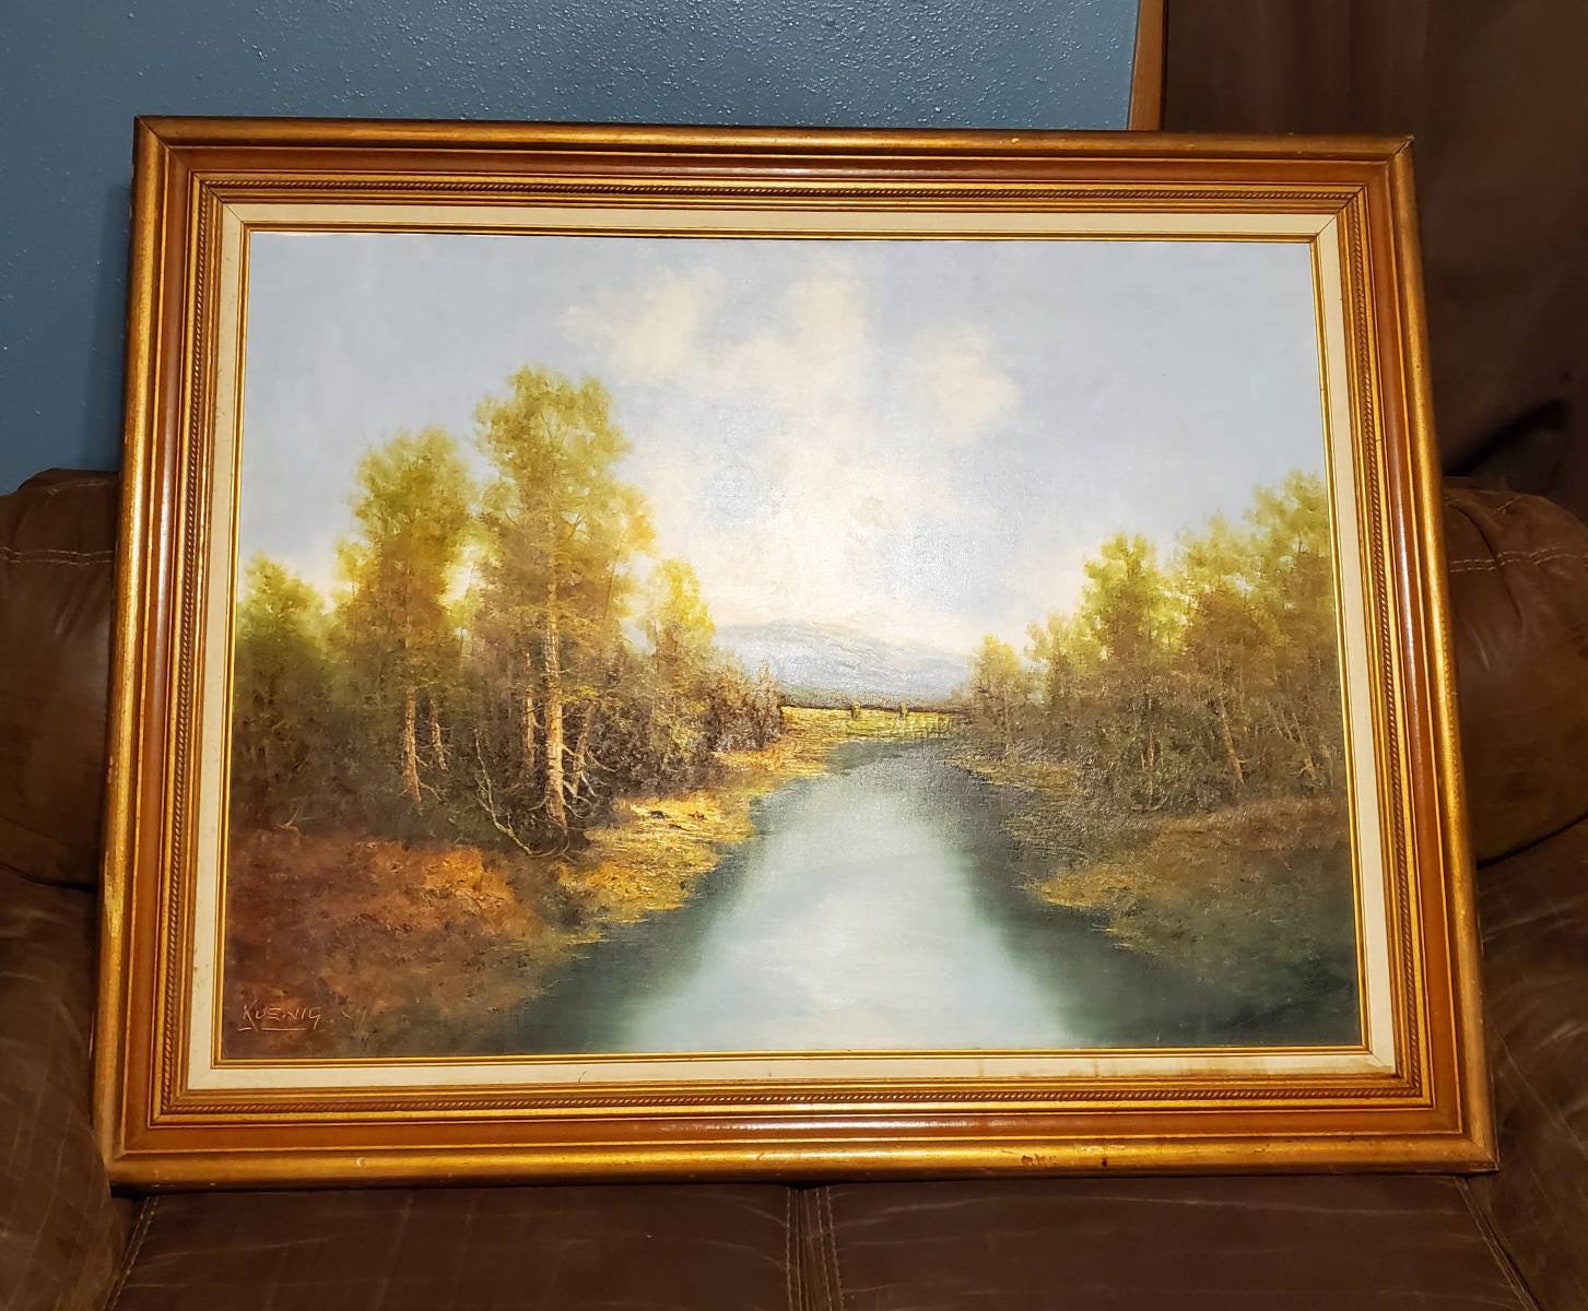 Original Signed Koenig Framed Landscape Oil Painting on Canvas | Etsy